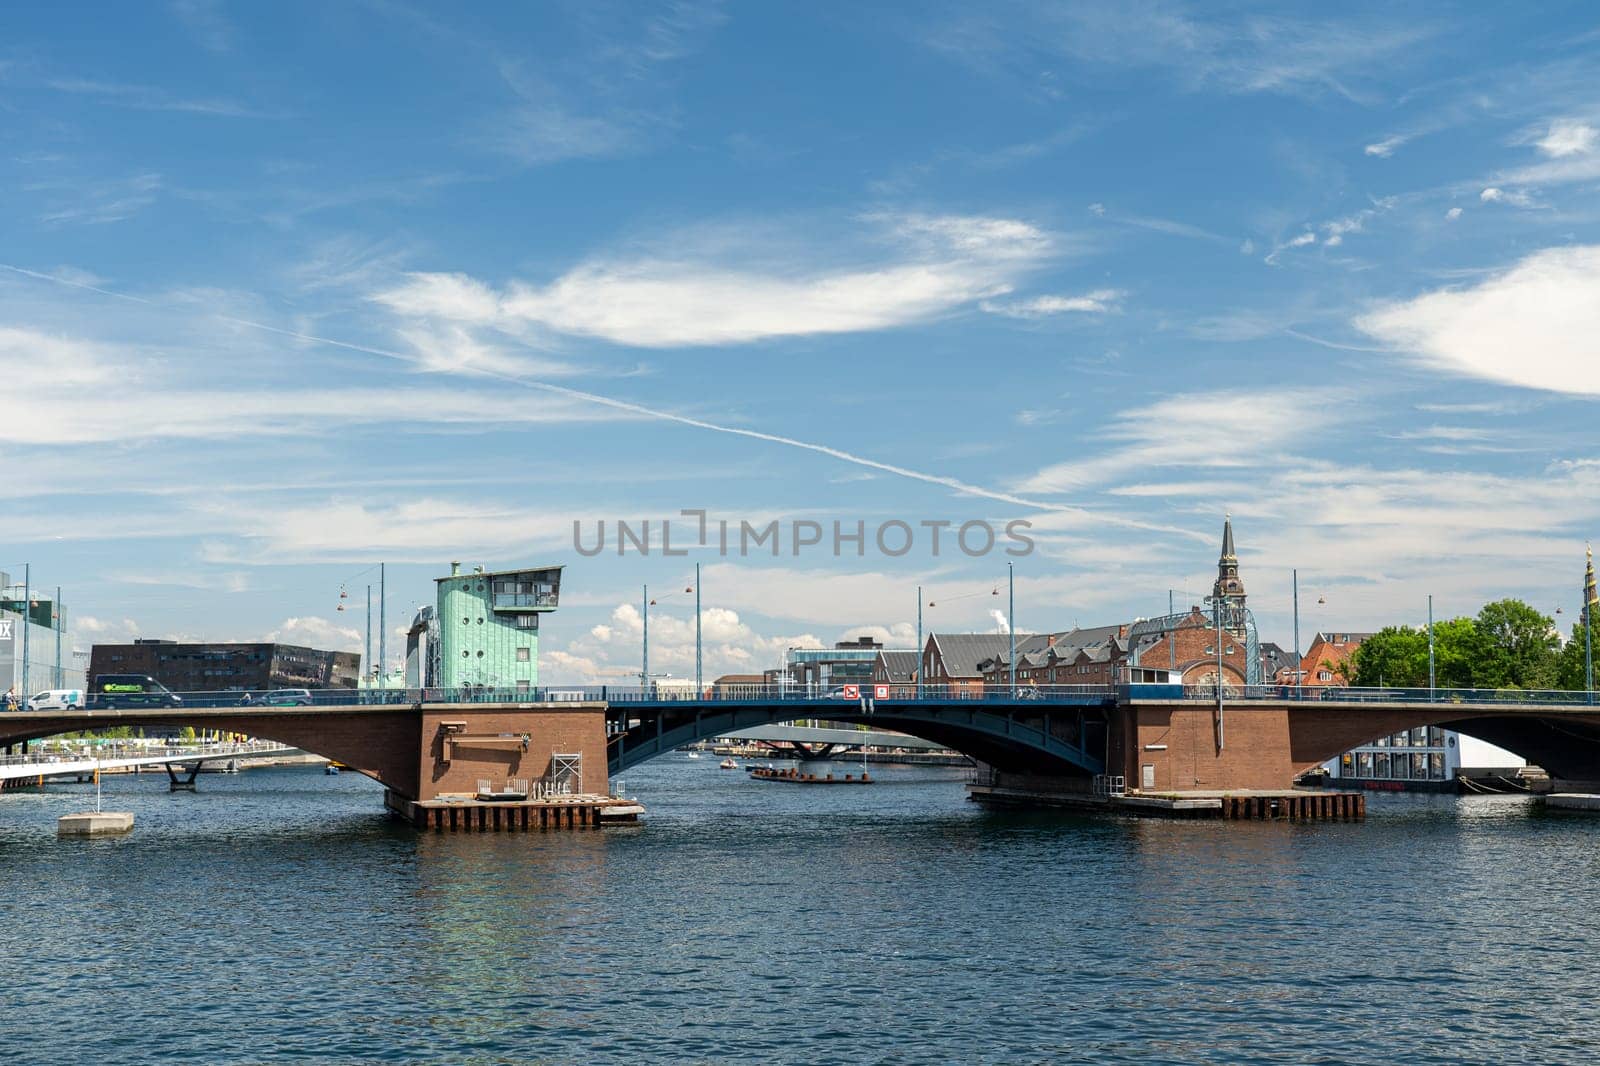 Copenhagen, Denmark - June 30, 2022: Langebro Bridge in the inner harbor.